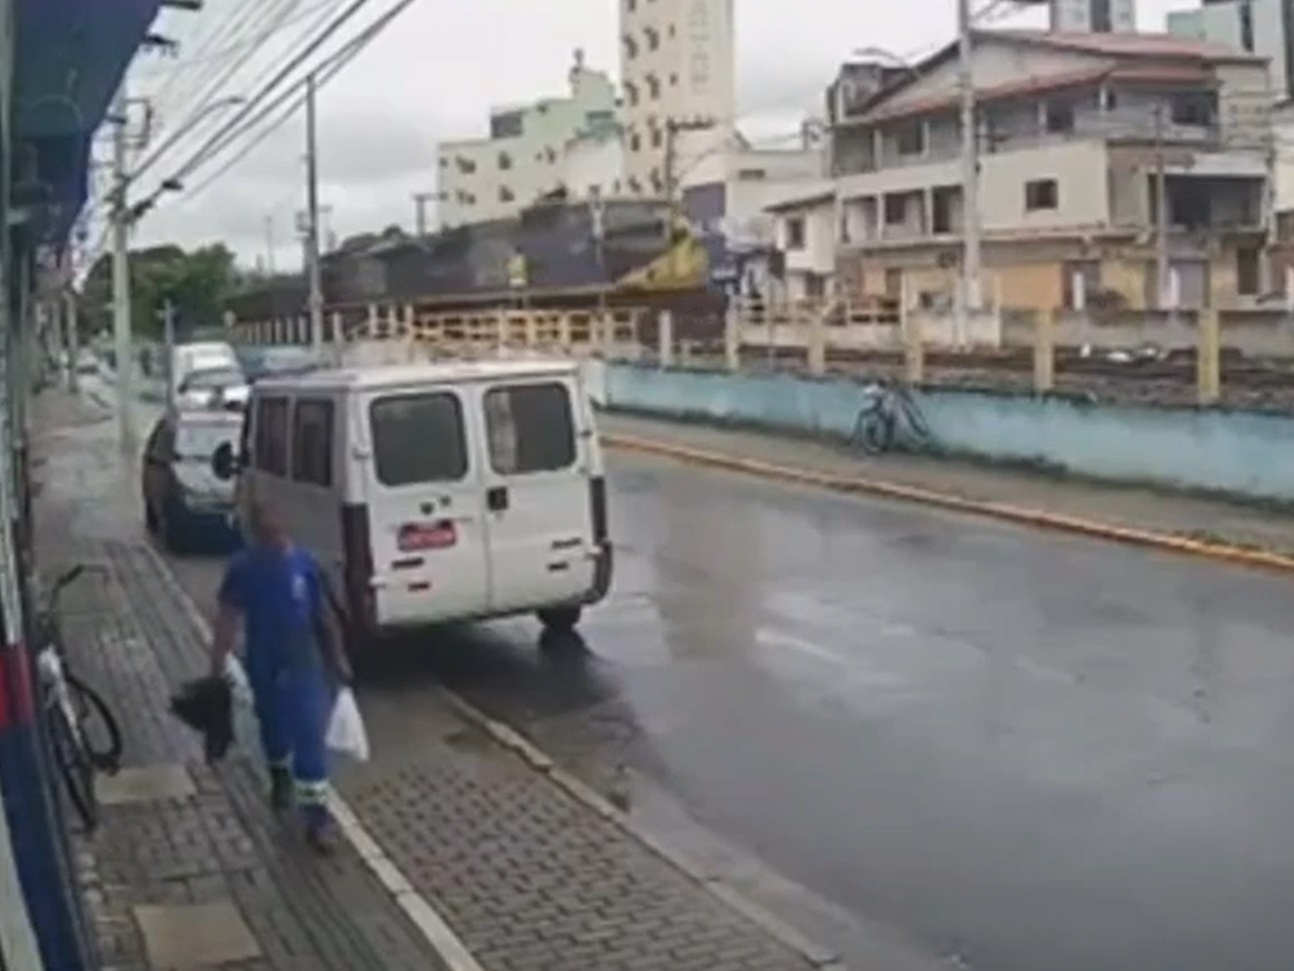 Homem morre atropelado por trem em ferrovia, Goiás